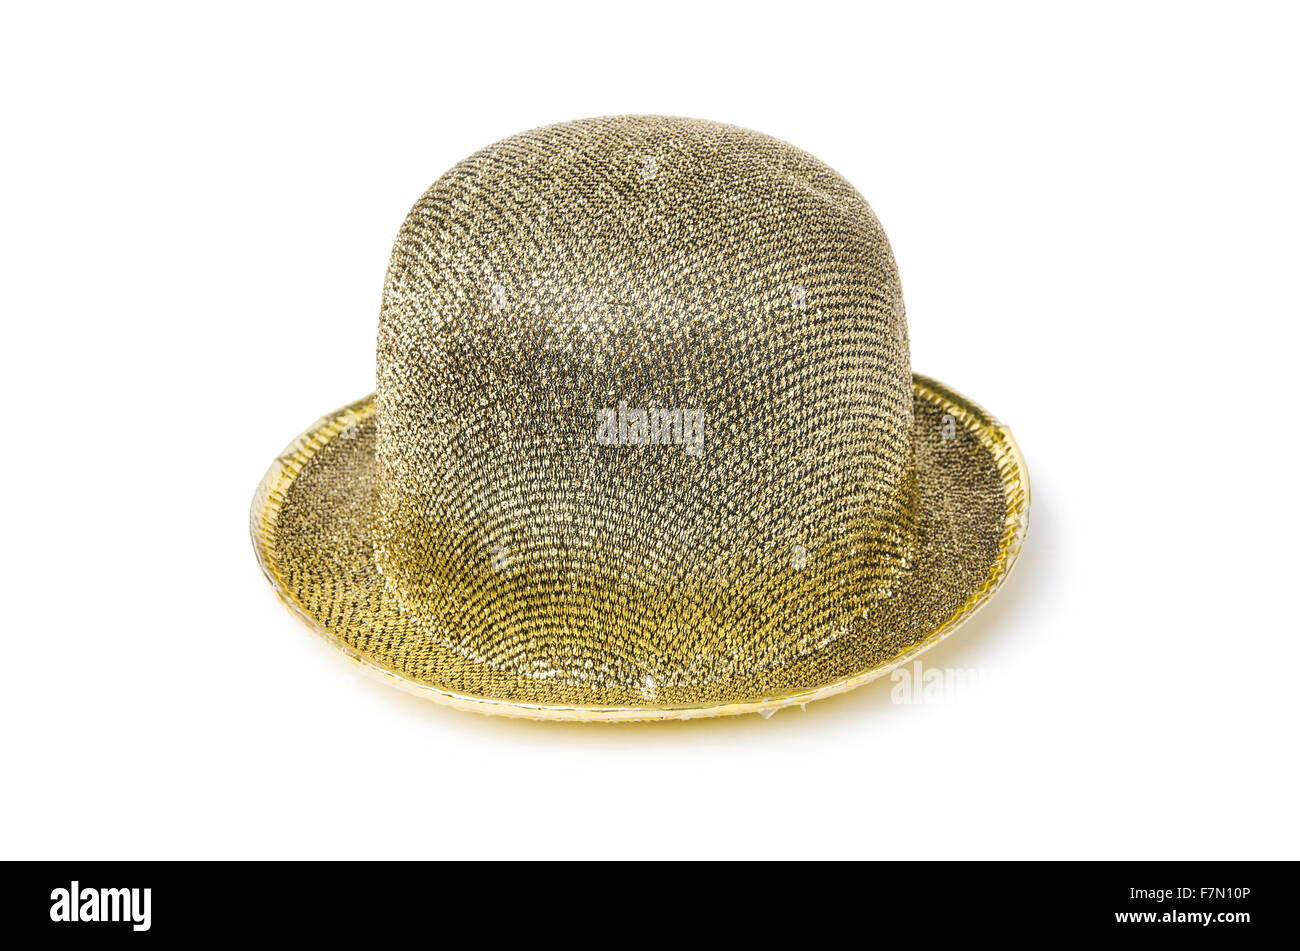 Expensive Golden Top Hat